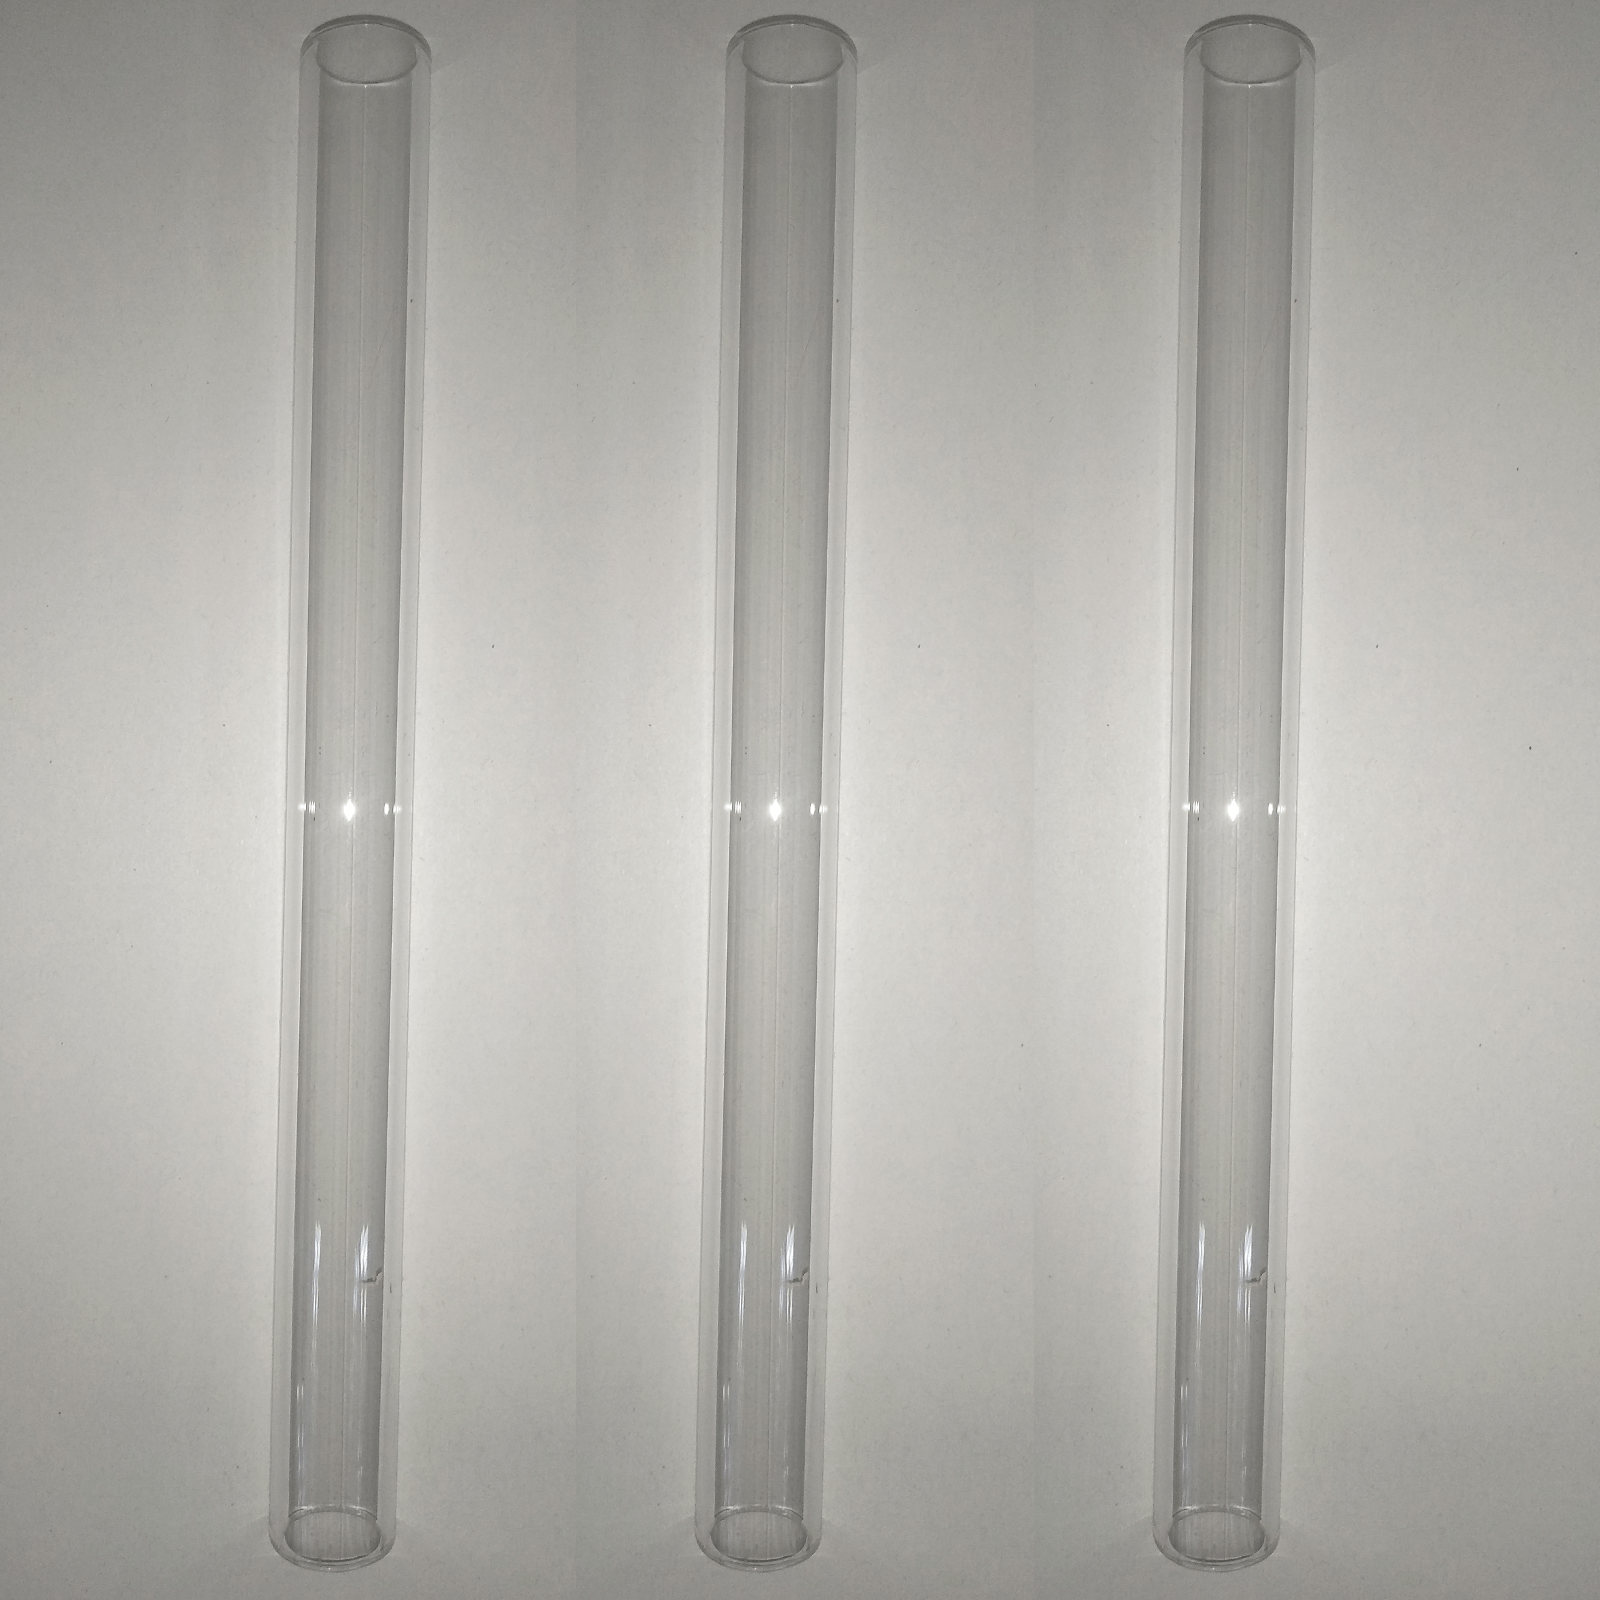 Glass tubes for oil separators